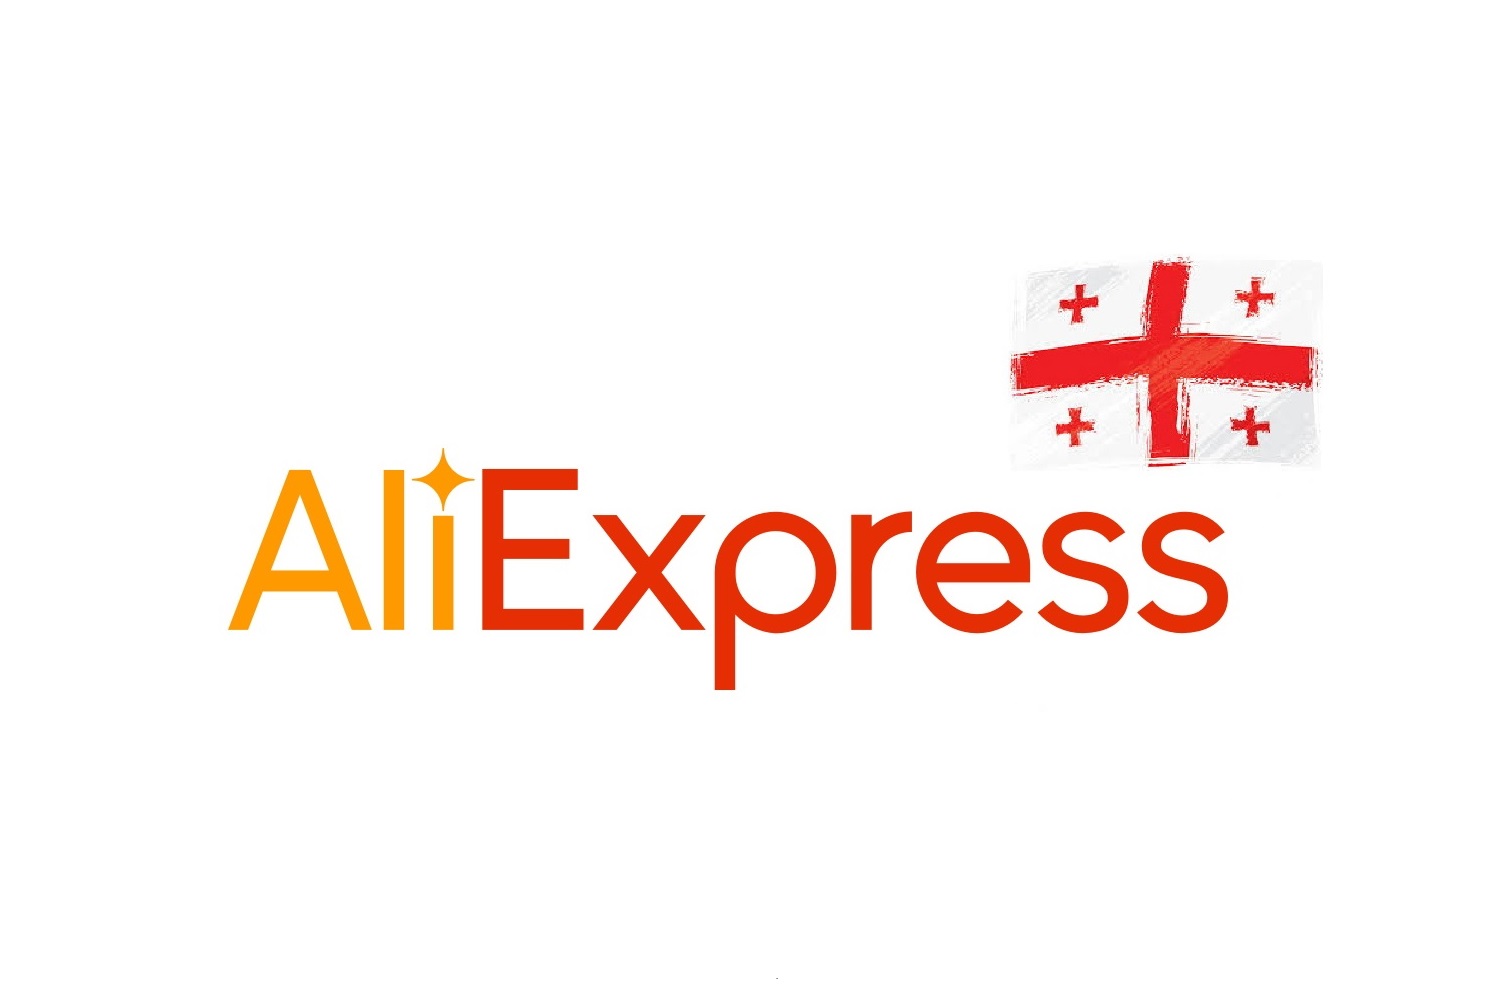 Պատվերներ Aliexpress-ից դեպի Վրաստան